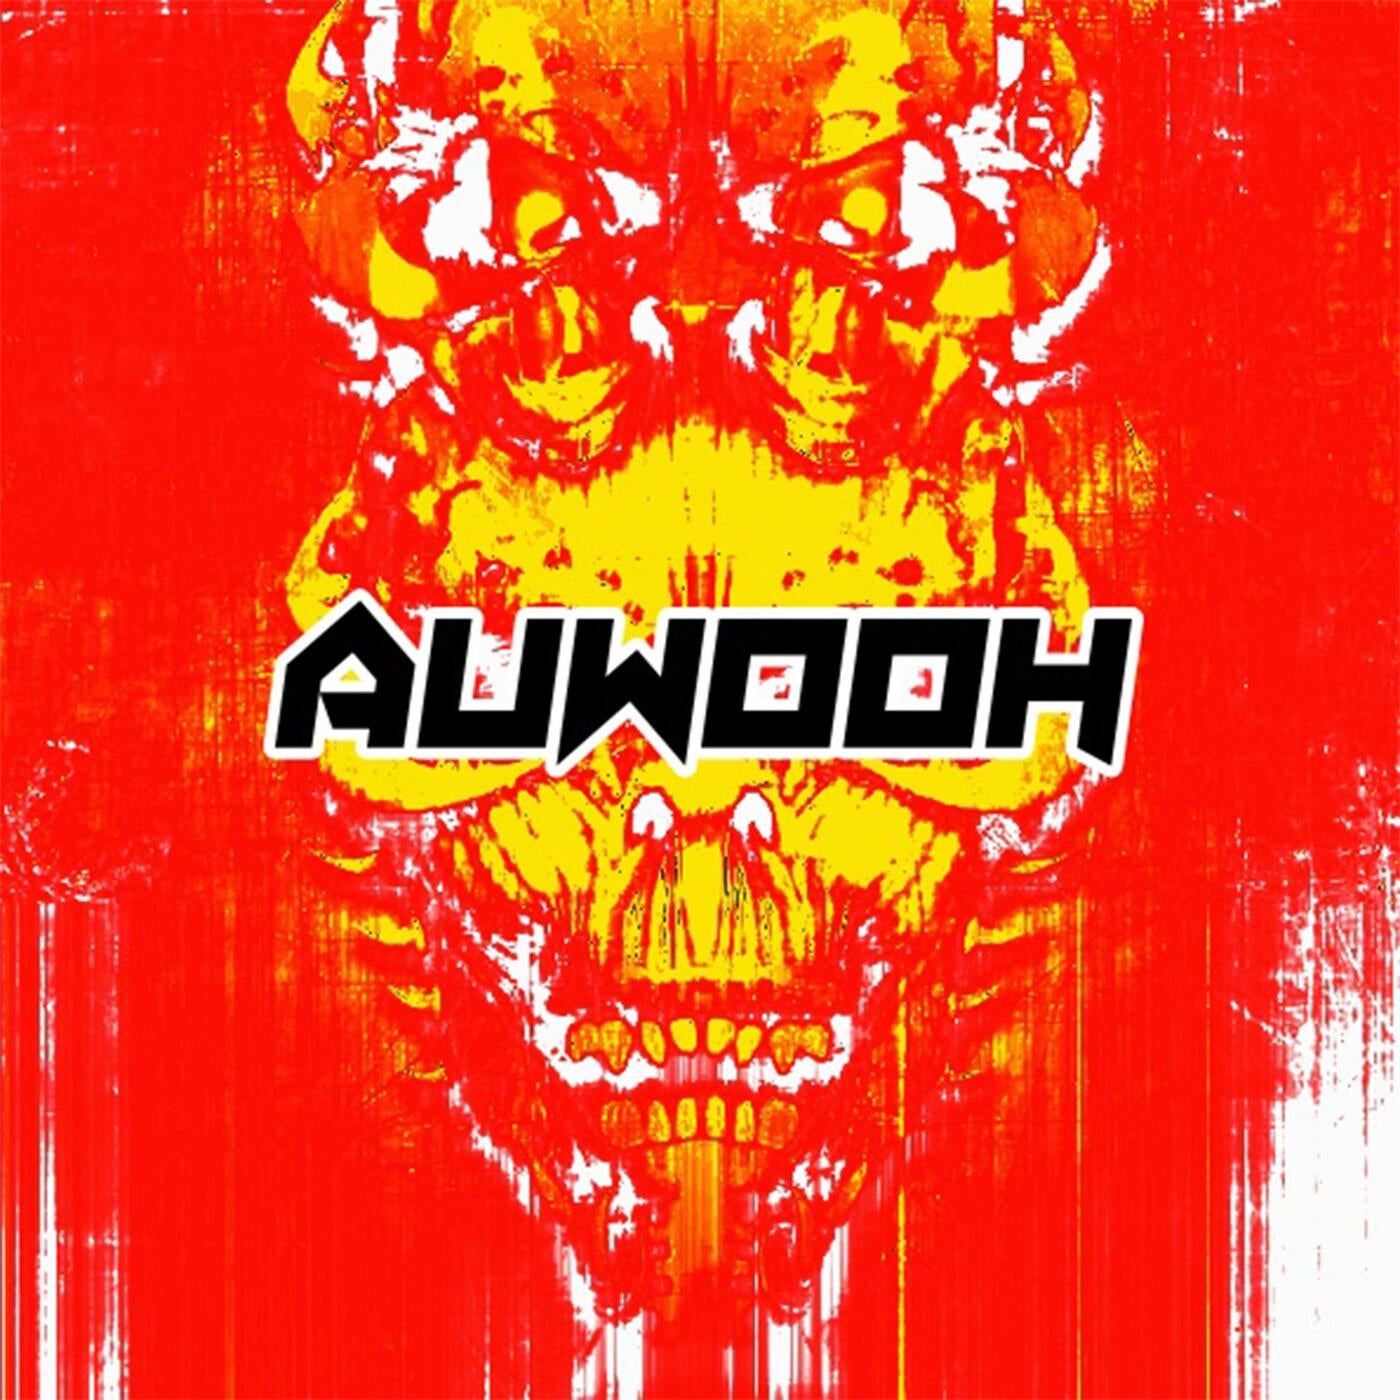 Auwooh